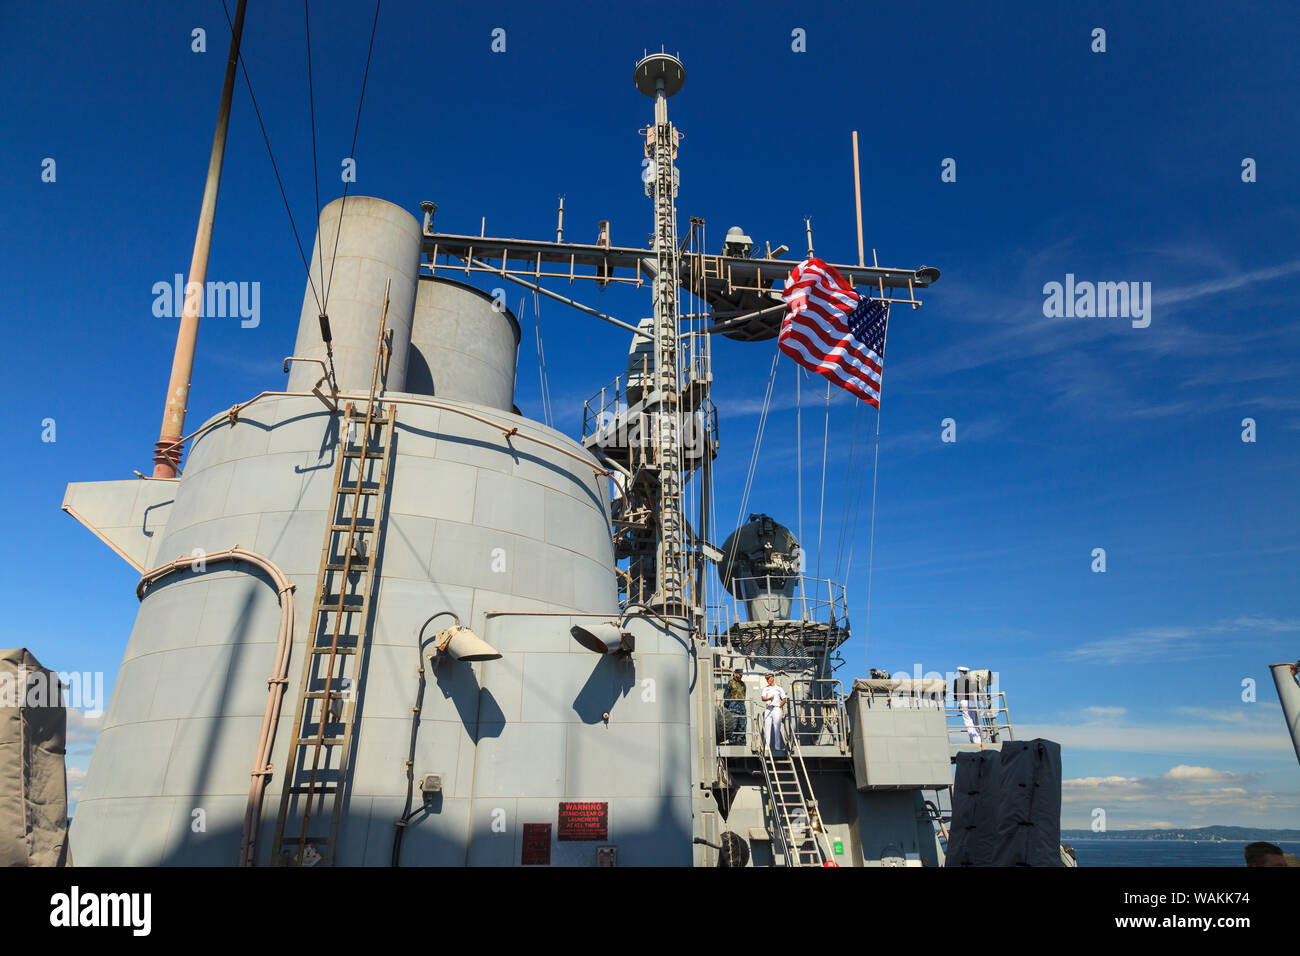 Views an Bord der USS Bunker Hill (CG52) Guided missile Cruiser, Seafair Feier. Parade der Schiffe während der Fleet Week, Elliott Bay, Seattle, Washington State, USA (Editorial nur verwenden) Stockfoto